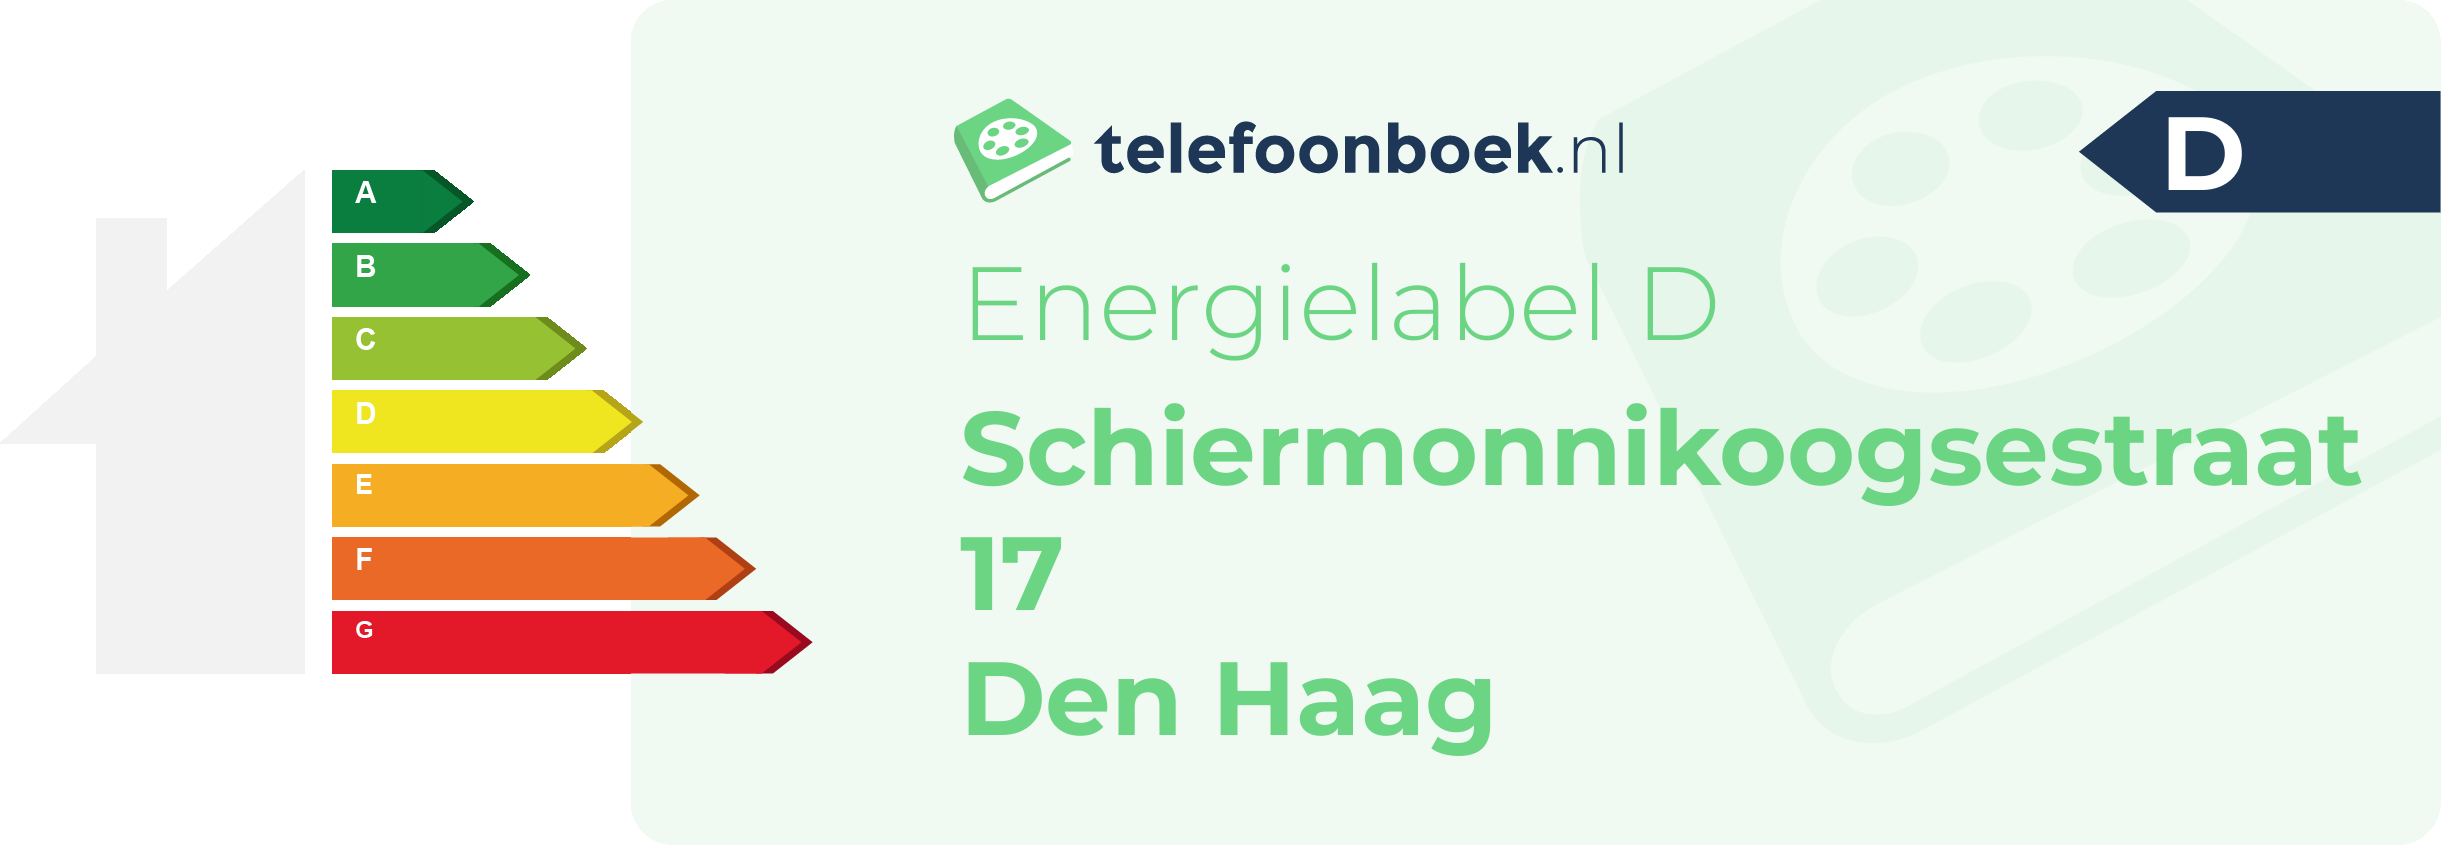 Energielabel Schiermonnikoogsestraat 17 Den Haag